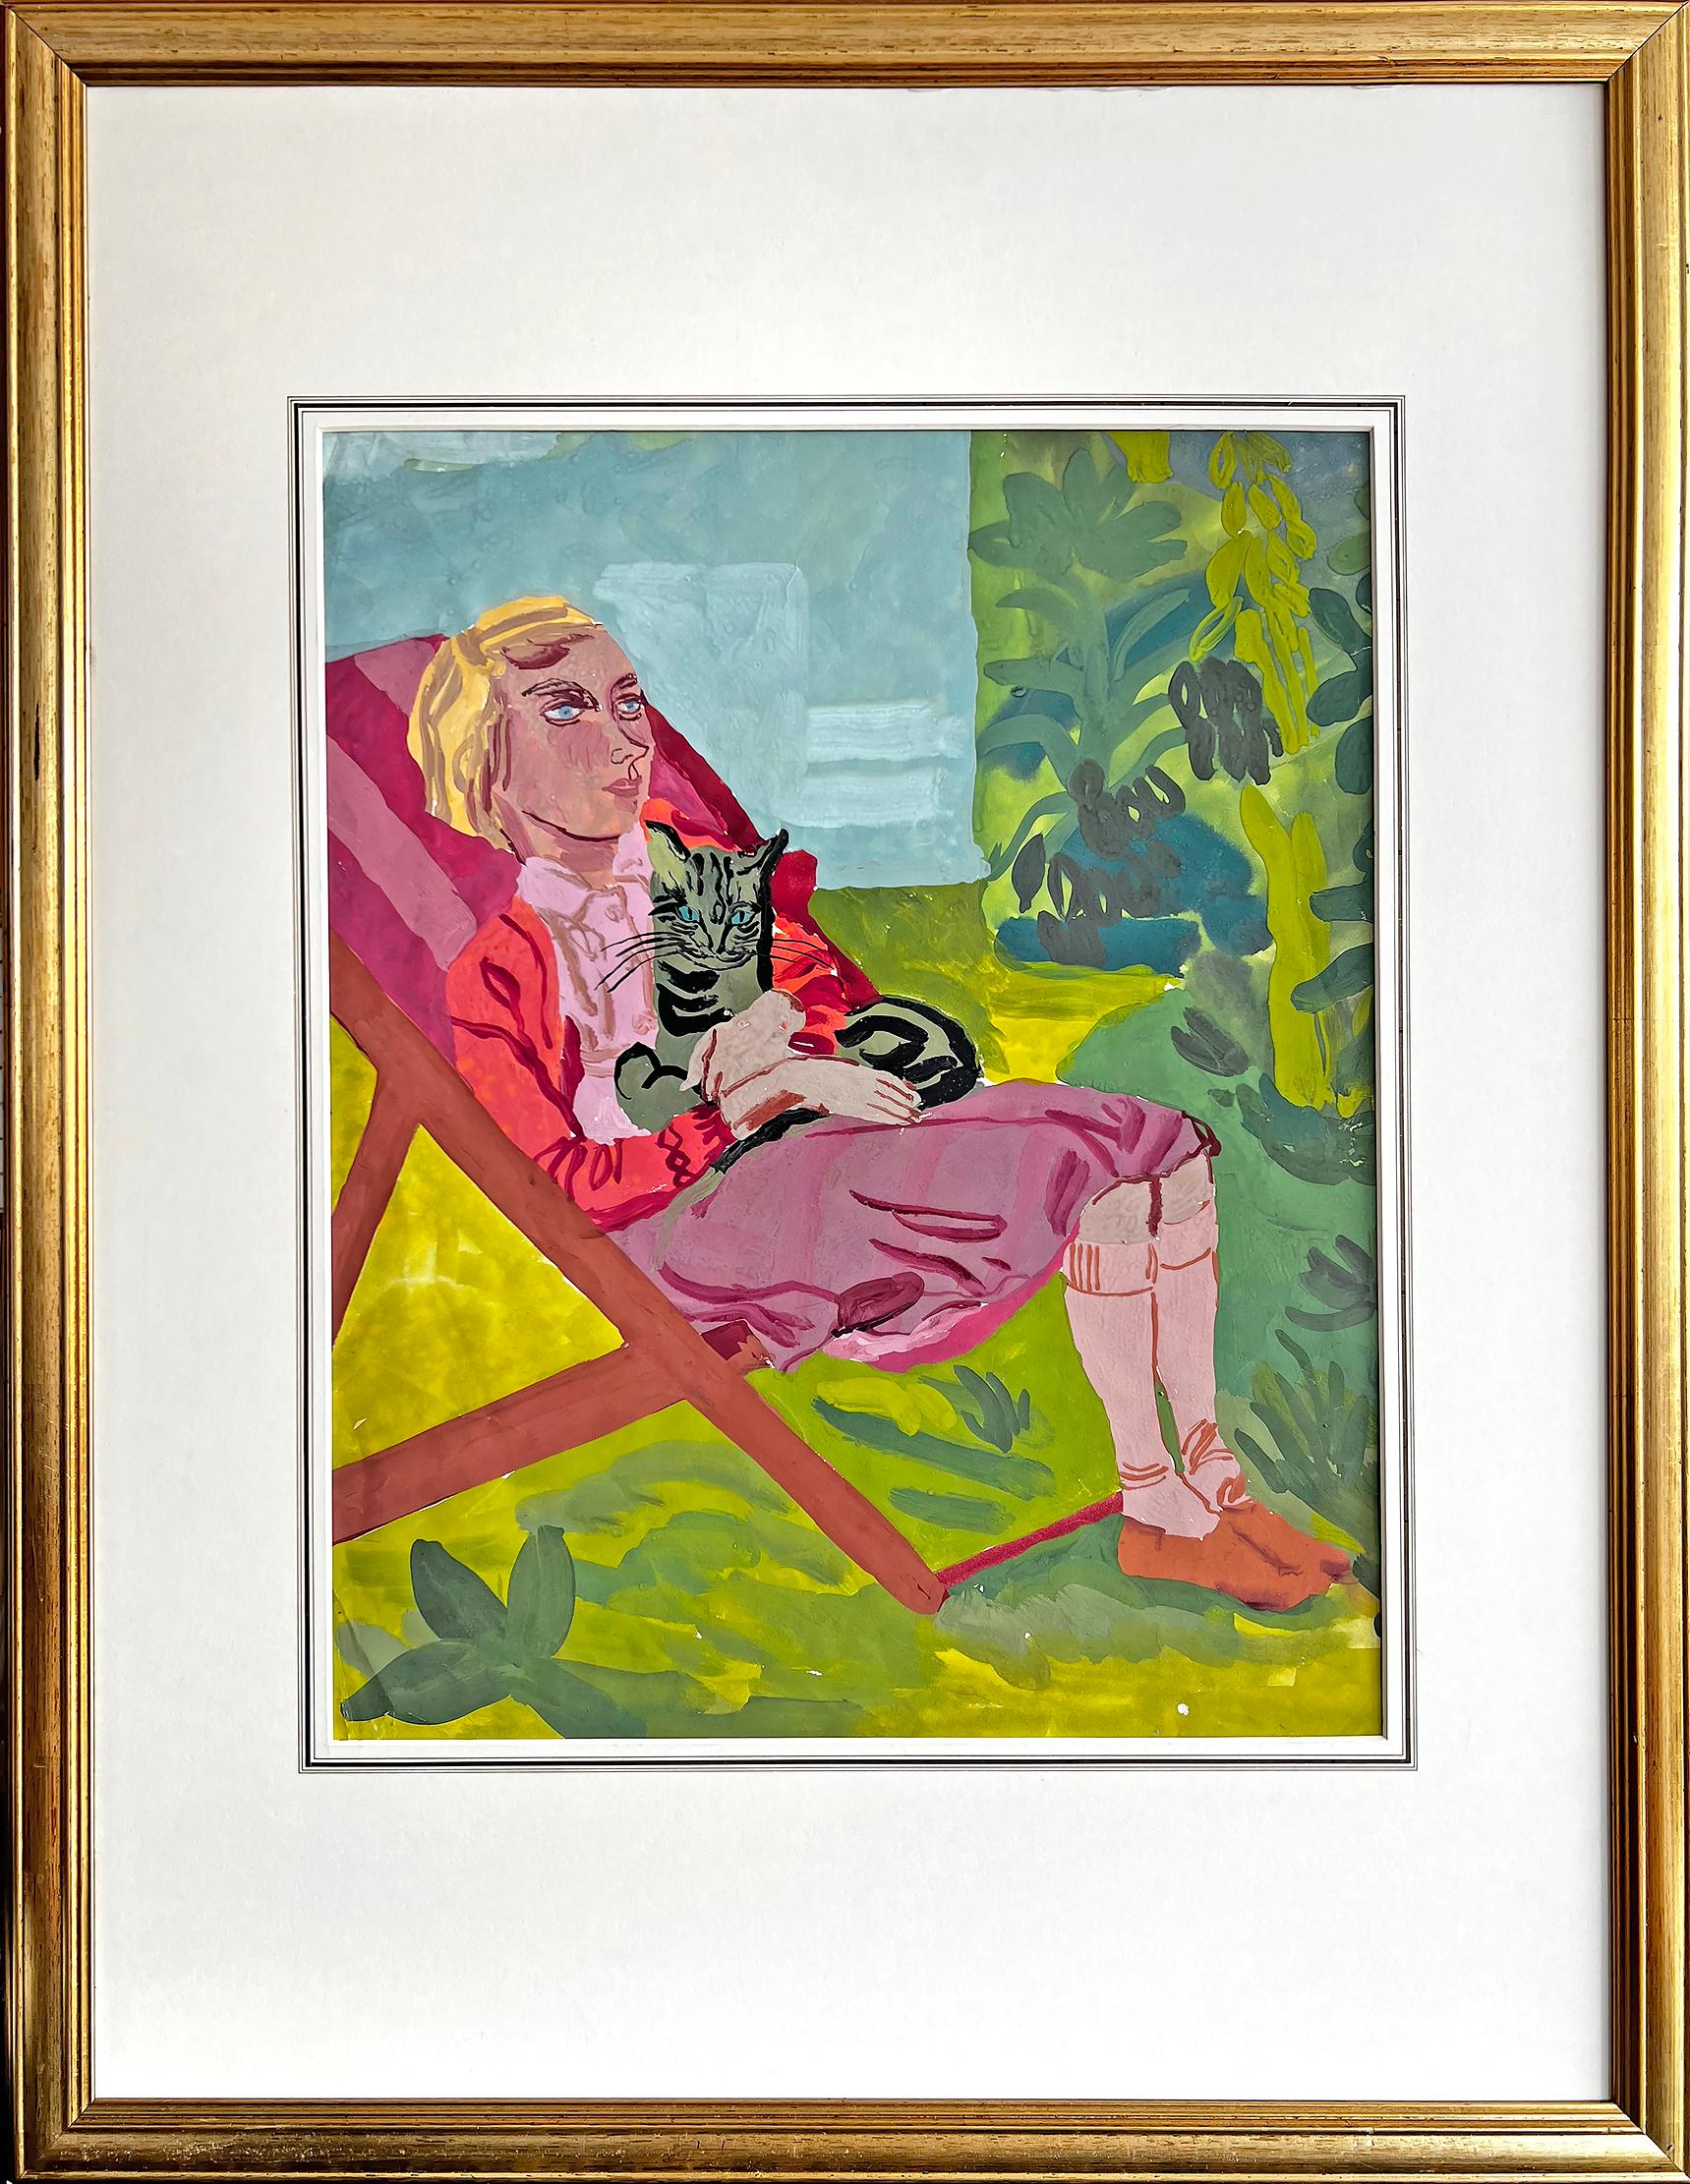 Une jeune femme blonde rêveuse tenant un chat du Bengale est représentée en train de se détendre dans une chaise longue. Elle regarde vers le haut et vers l'extérieur, réfléchissant - les marbrures distinctives du chat font écho à l'arrière-plan